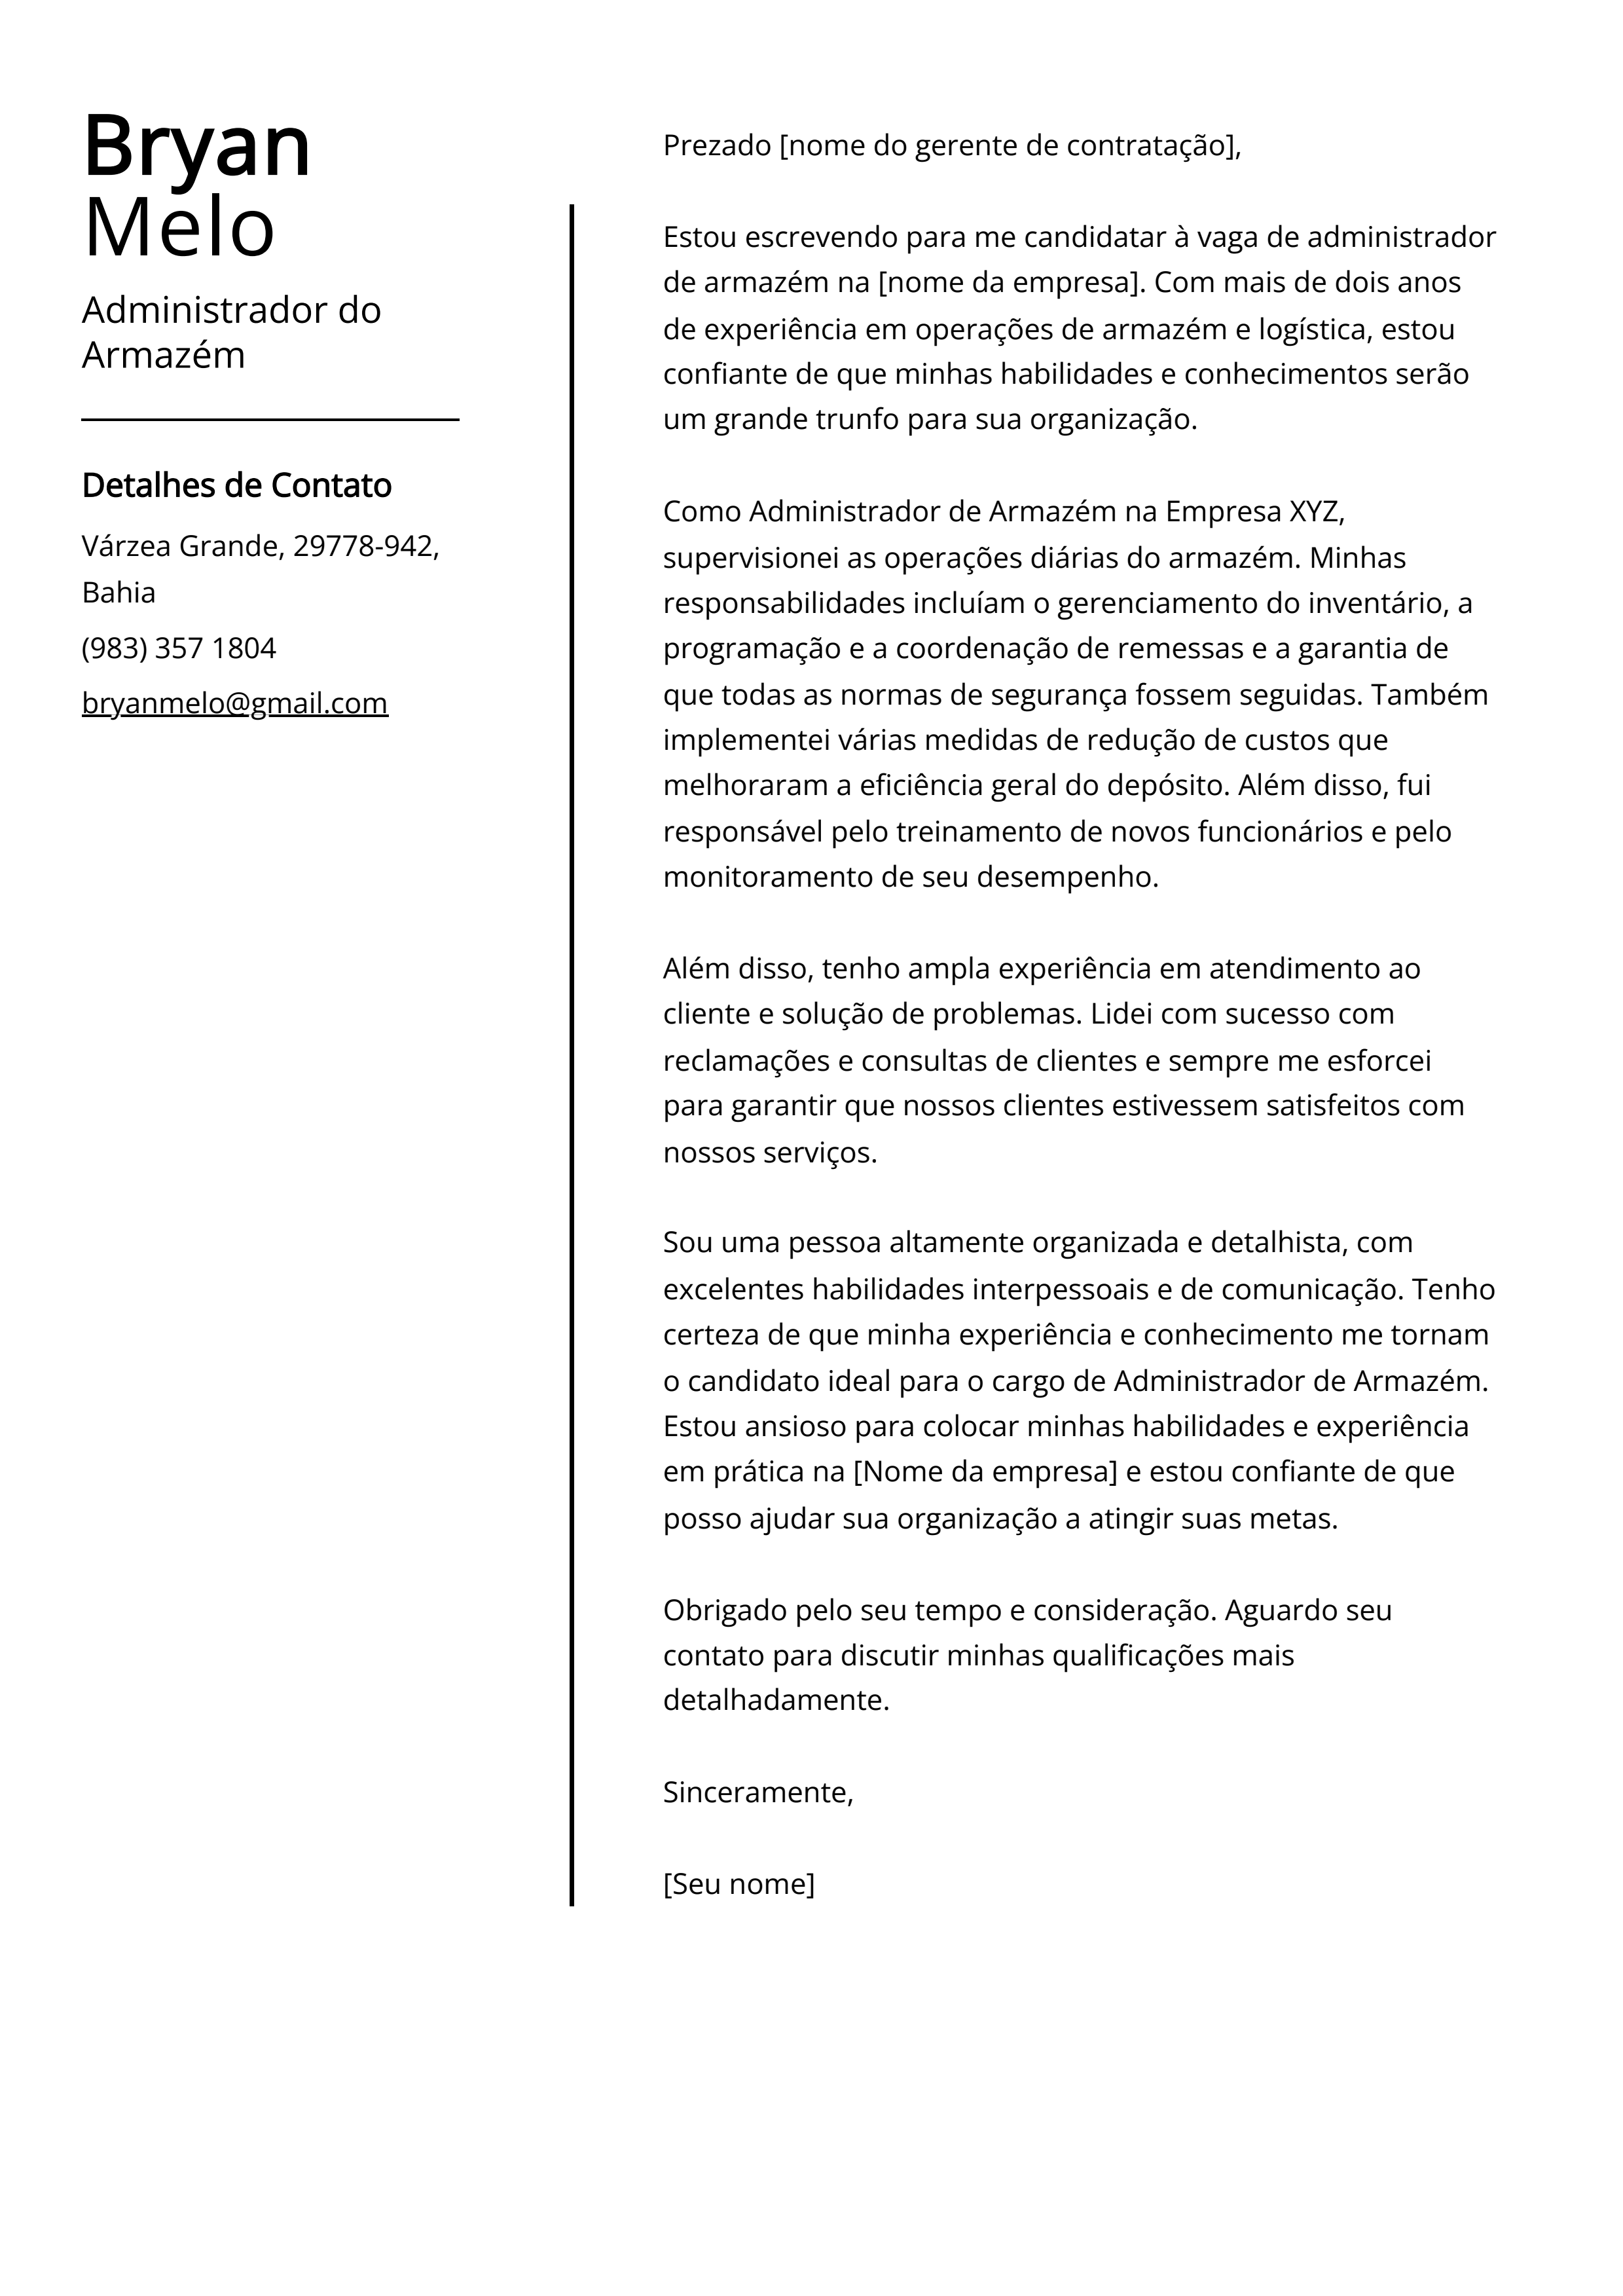 Exemplo de carta de apresentação do Administrador do Armazém